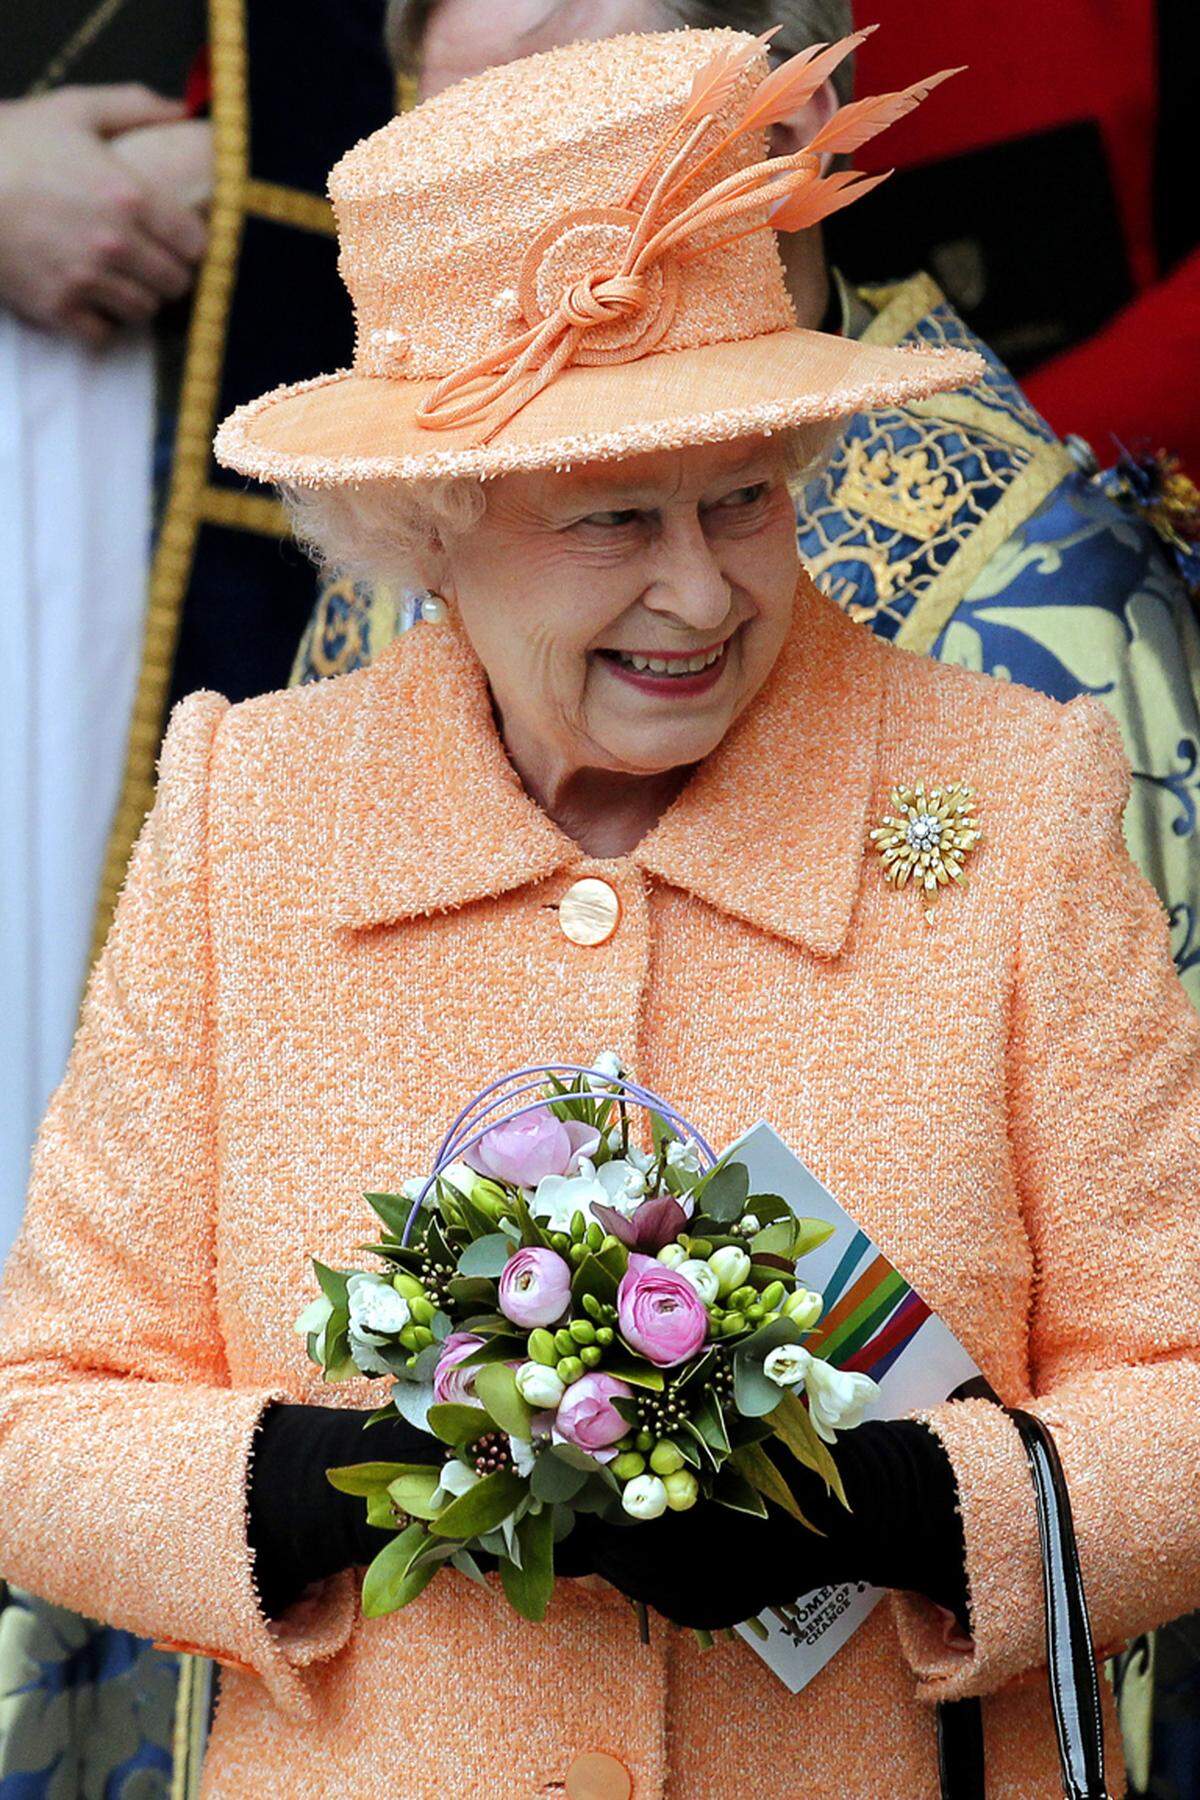 Königin Elisabeth II. hat langfristig gute Karten in den "Ältestenrat" aufgenommen zu werden: Die Queen, die am 23. April 2013 ihren 87. Geburtstag feierte, zeigt keinerlei Bereitschaft, es ihrer niederländischen Amtskollegin Beatrix gleichzutun und zugunsten ihres Sohnes abzudanken. Die alten Herren könnten also noch weibliche Konkurrenz bekommen.